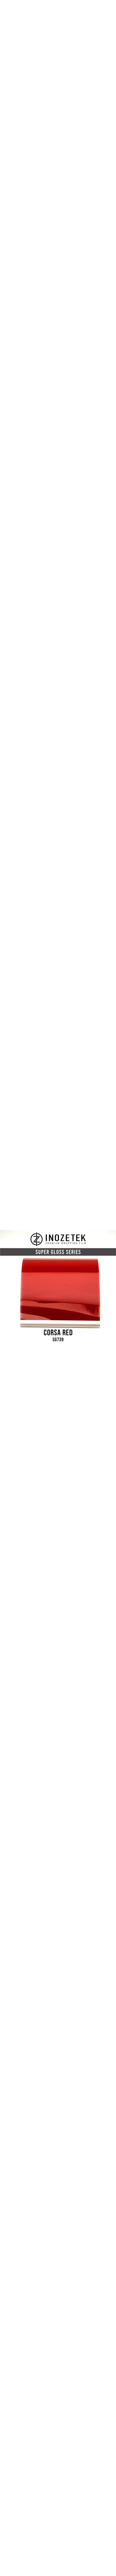 SG739 Super gloss corsa red Inozetek en 1.52m